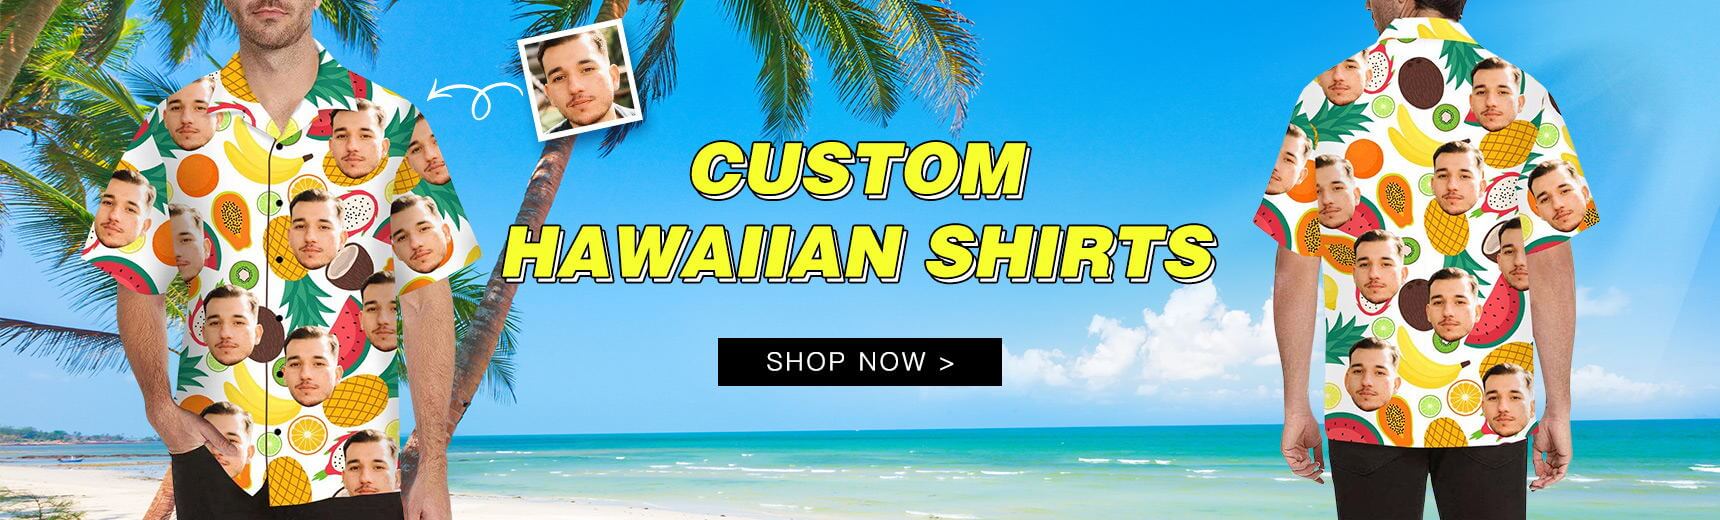 HAWAIIAN SHIRTS